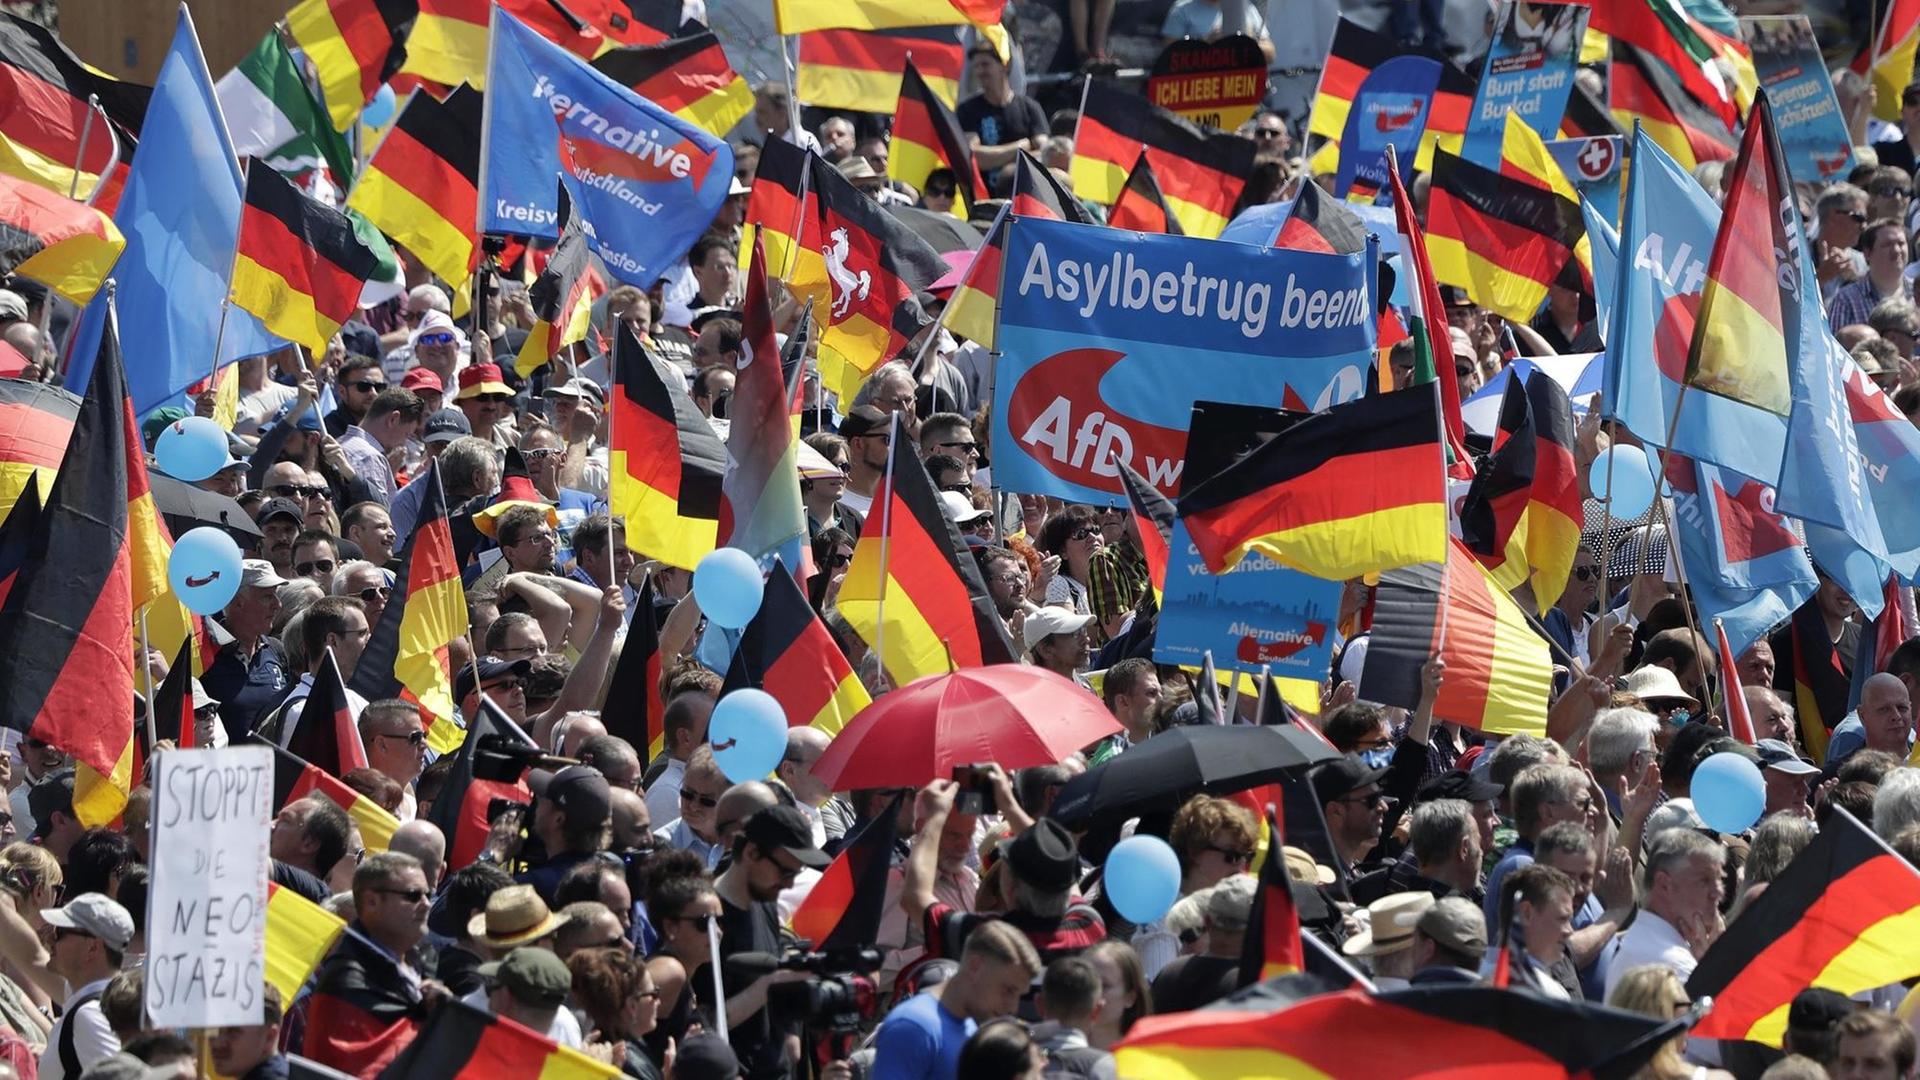 Das Bild zeigt zahlreiche Anhänger der AfD auf einer Kundgebung gegen die Politik der Bundesregierung in Berlin. Zu sehen sind viele Deutschlandflaggen und Fahnen mit dem AfD-Parteilogo. Auf einem Banner steht zu lesen "Asylbetrug beenden".